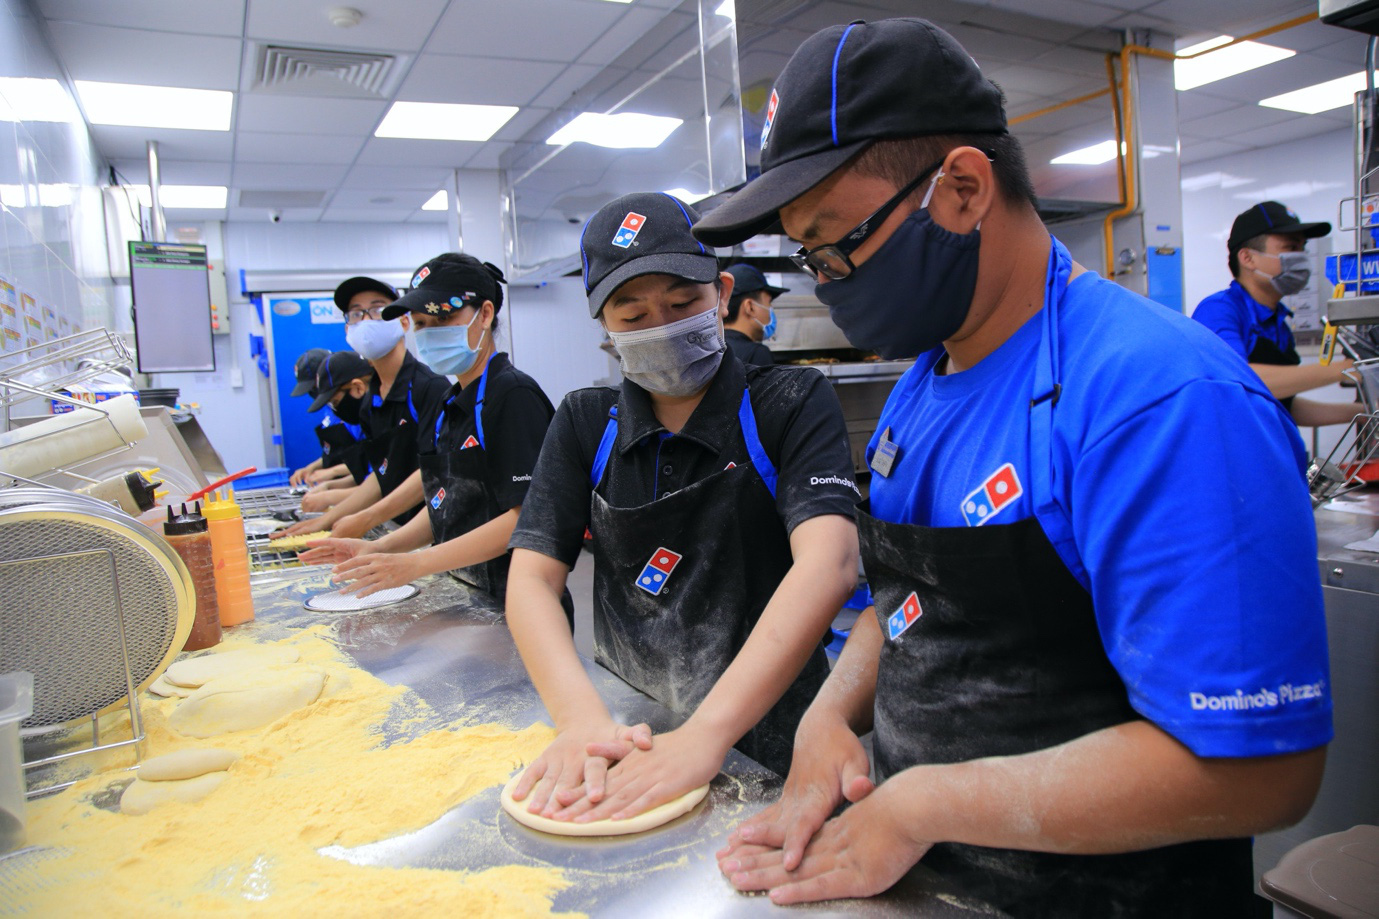 Domino’s – Thương hiệu Pizza hàng đầu thế giới đã “hạ cánh” tại Biên Hoà, đánh dấu sự phát triển chuỗi hệ thống Pizza Mỹ tại các tỉnh thành - Ảnh 5.